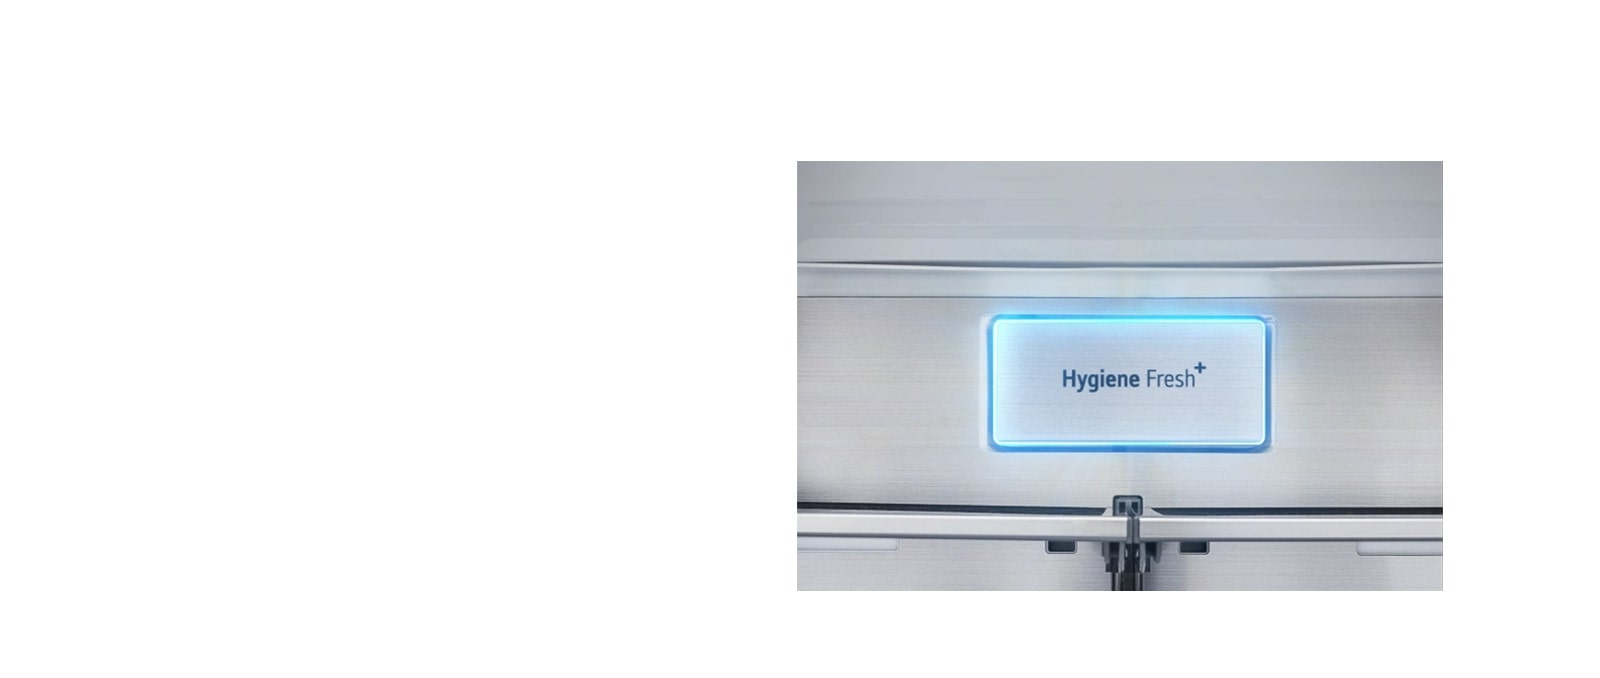 צילום מקרוב של Hygiene Fresh+ המוצמד על קיר האל-חלד של מקרר LG לזרימת אוויר.